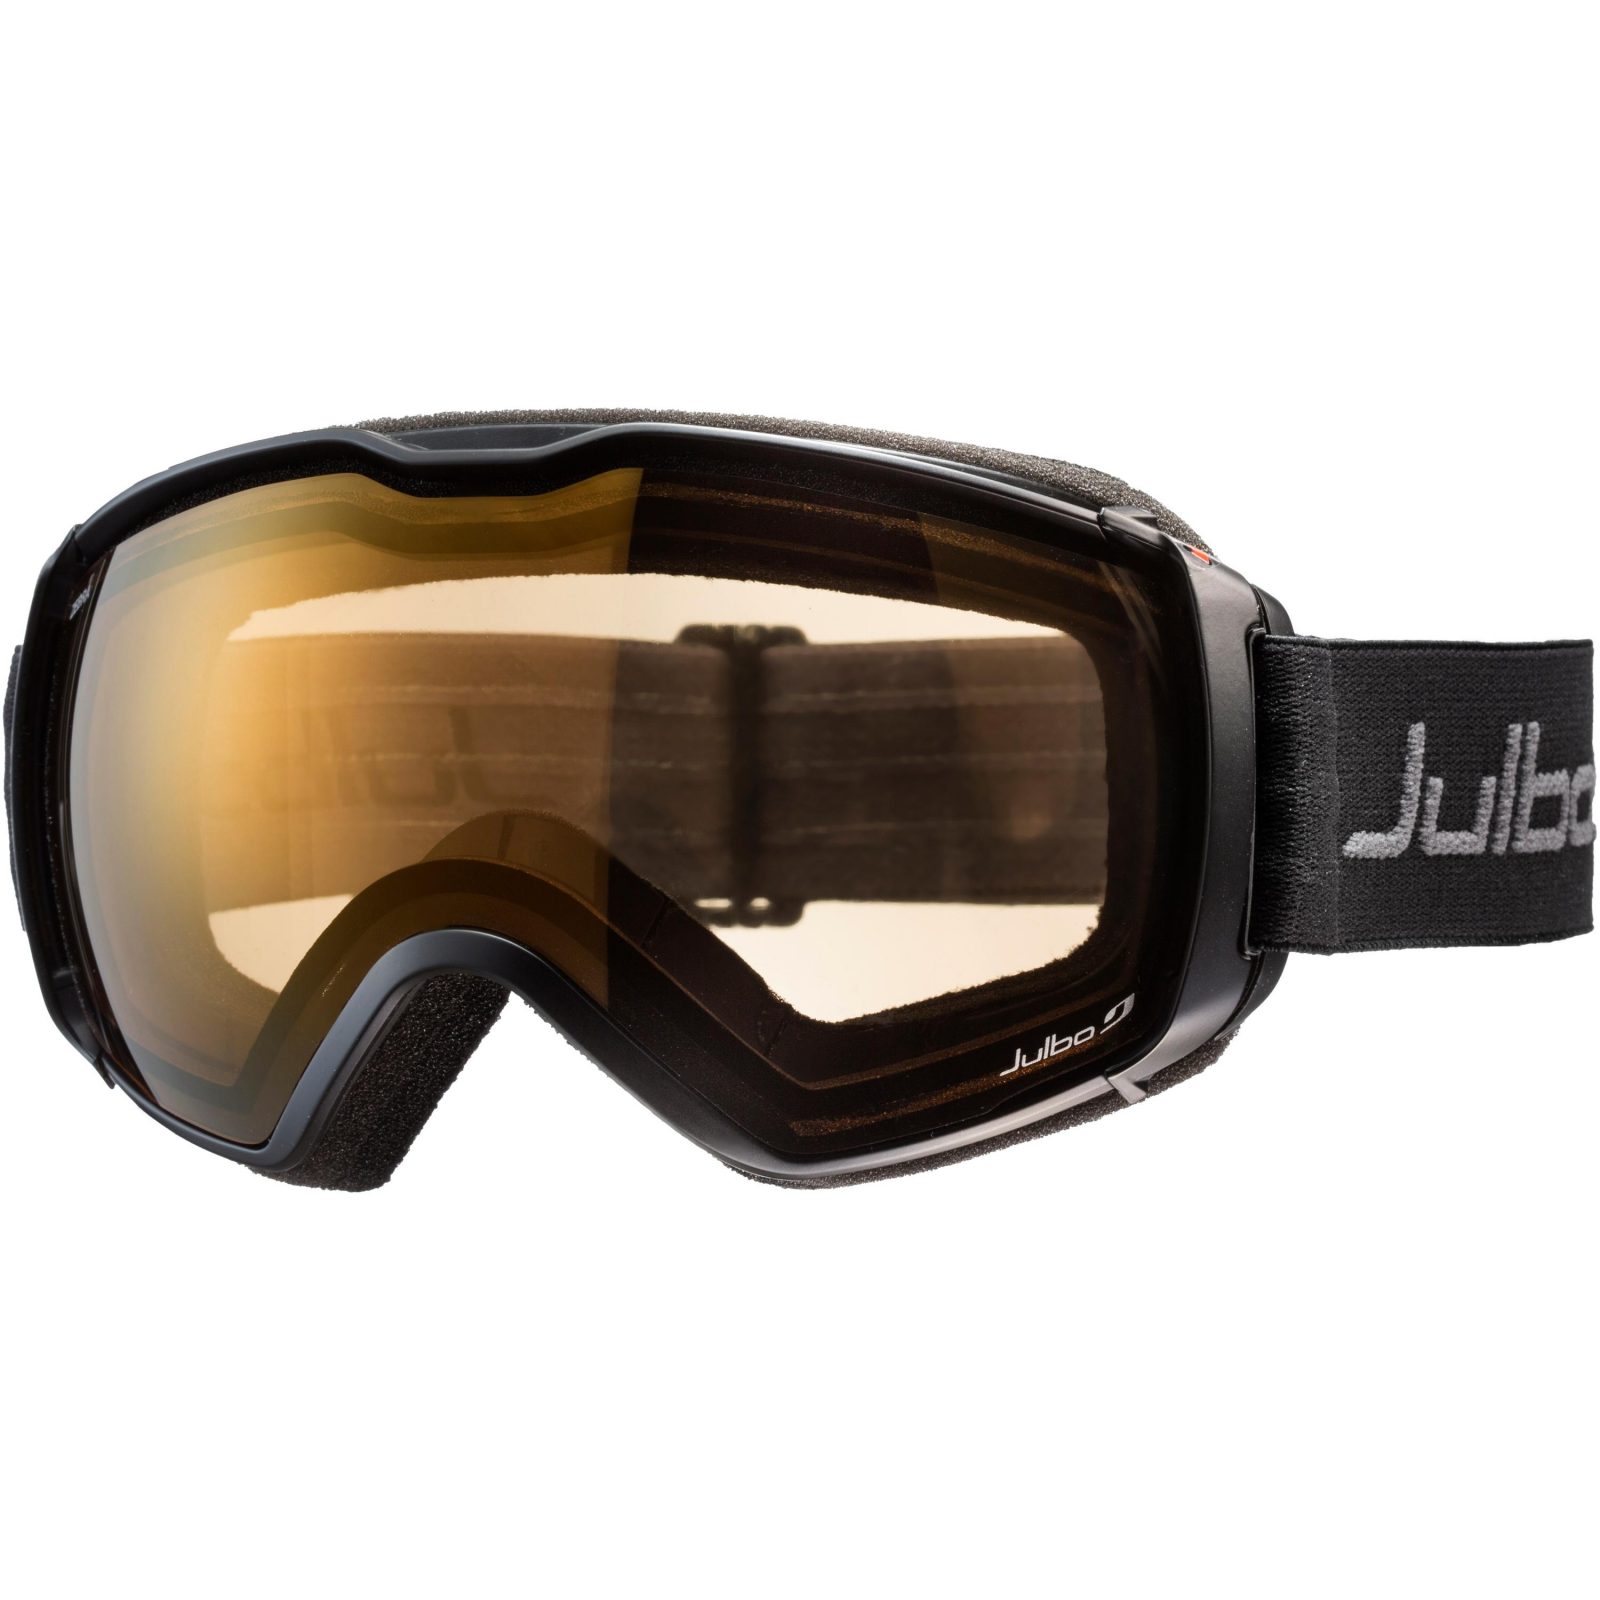 Julbo Aerospace Ski & Snowboard Brille Bewertung und Test